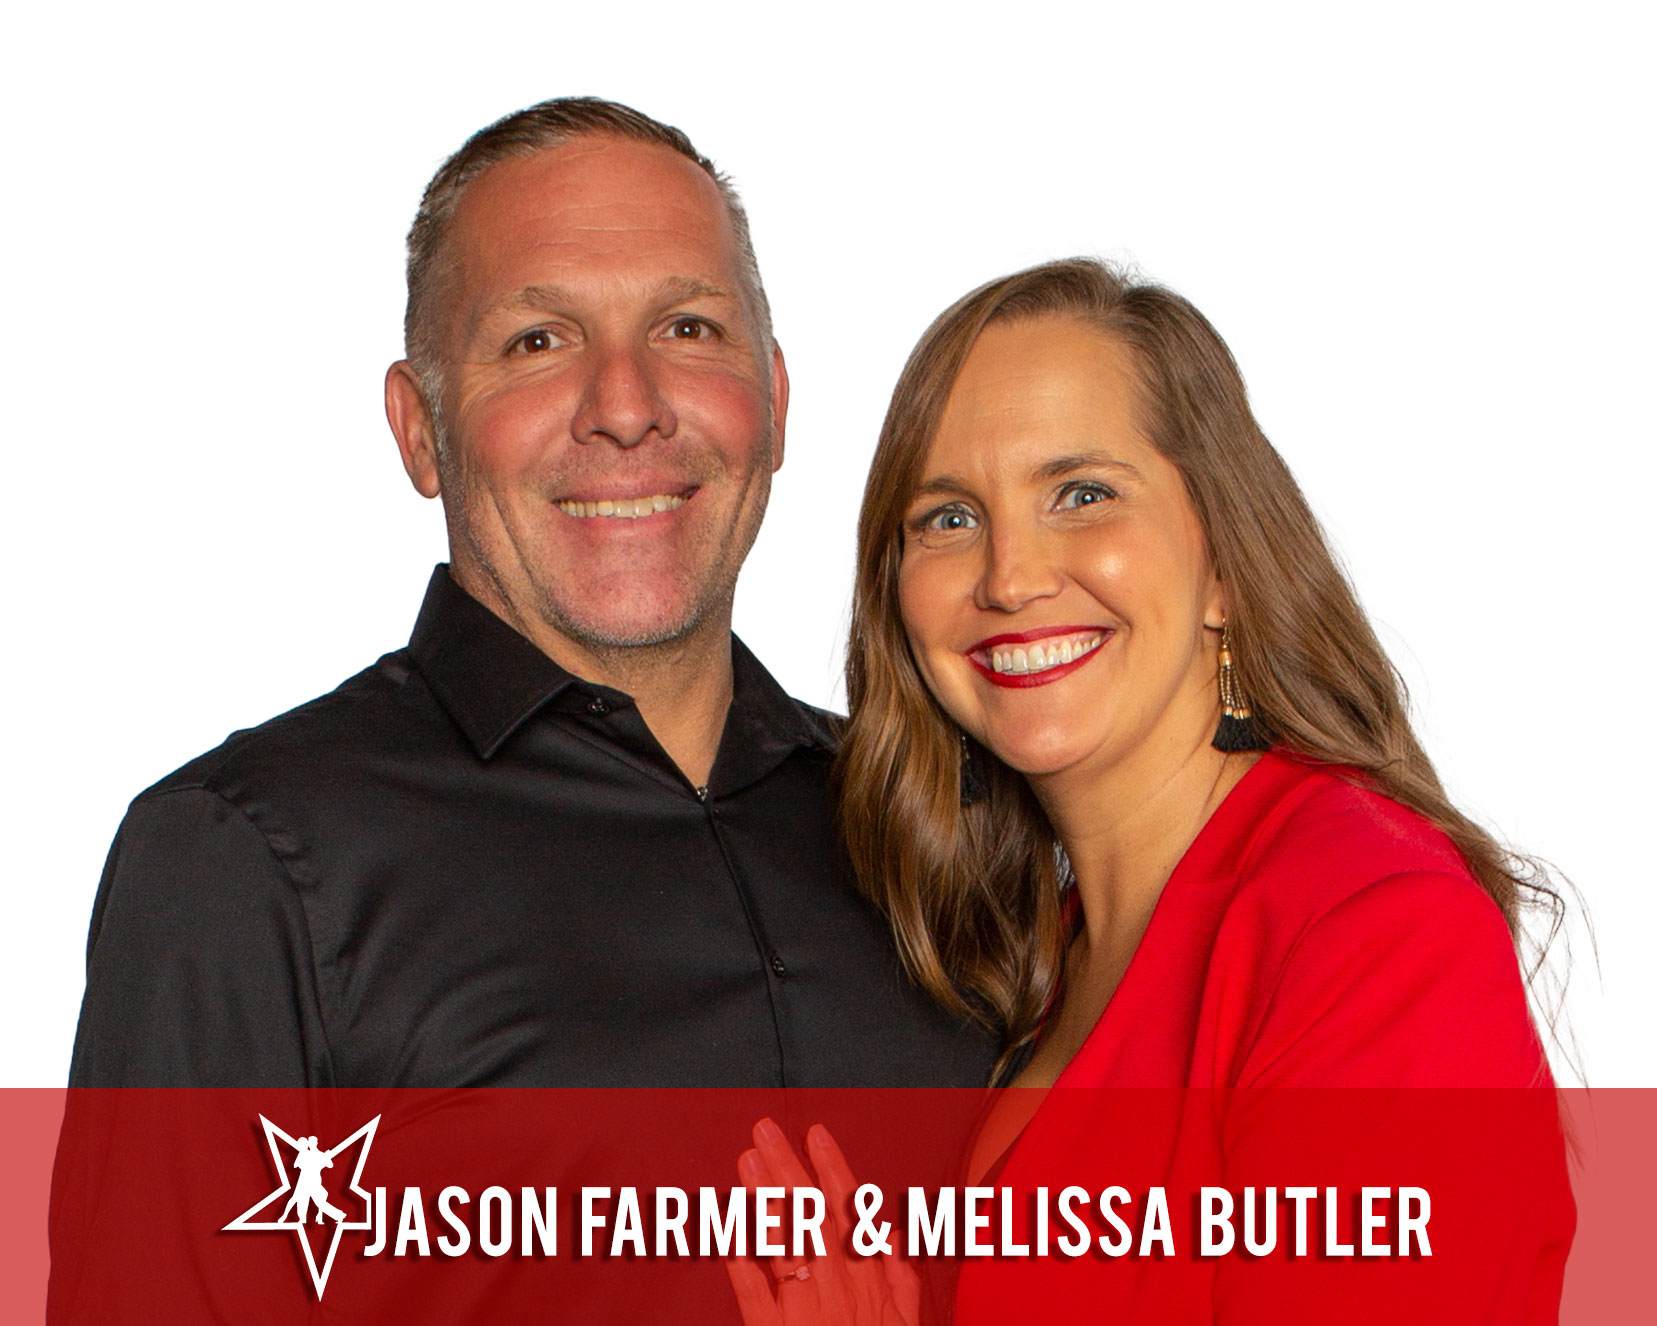 Jason Farmer and Melissa Butler